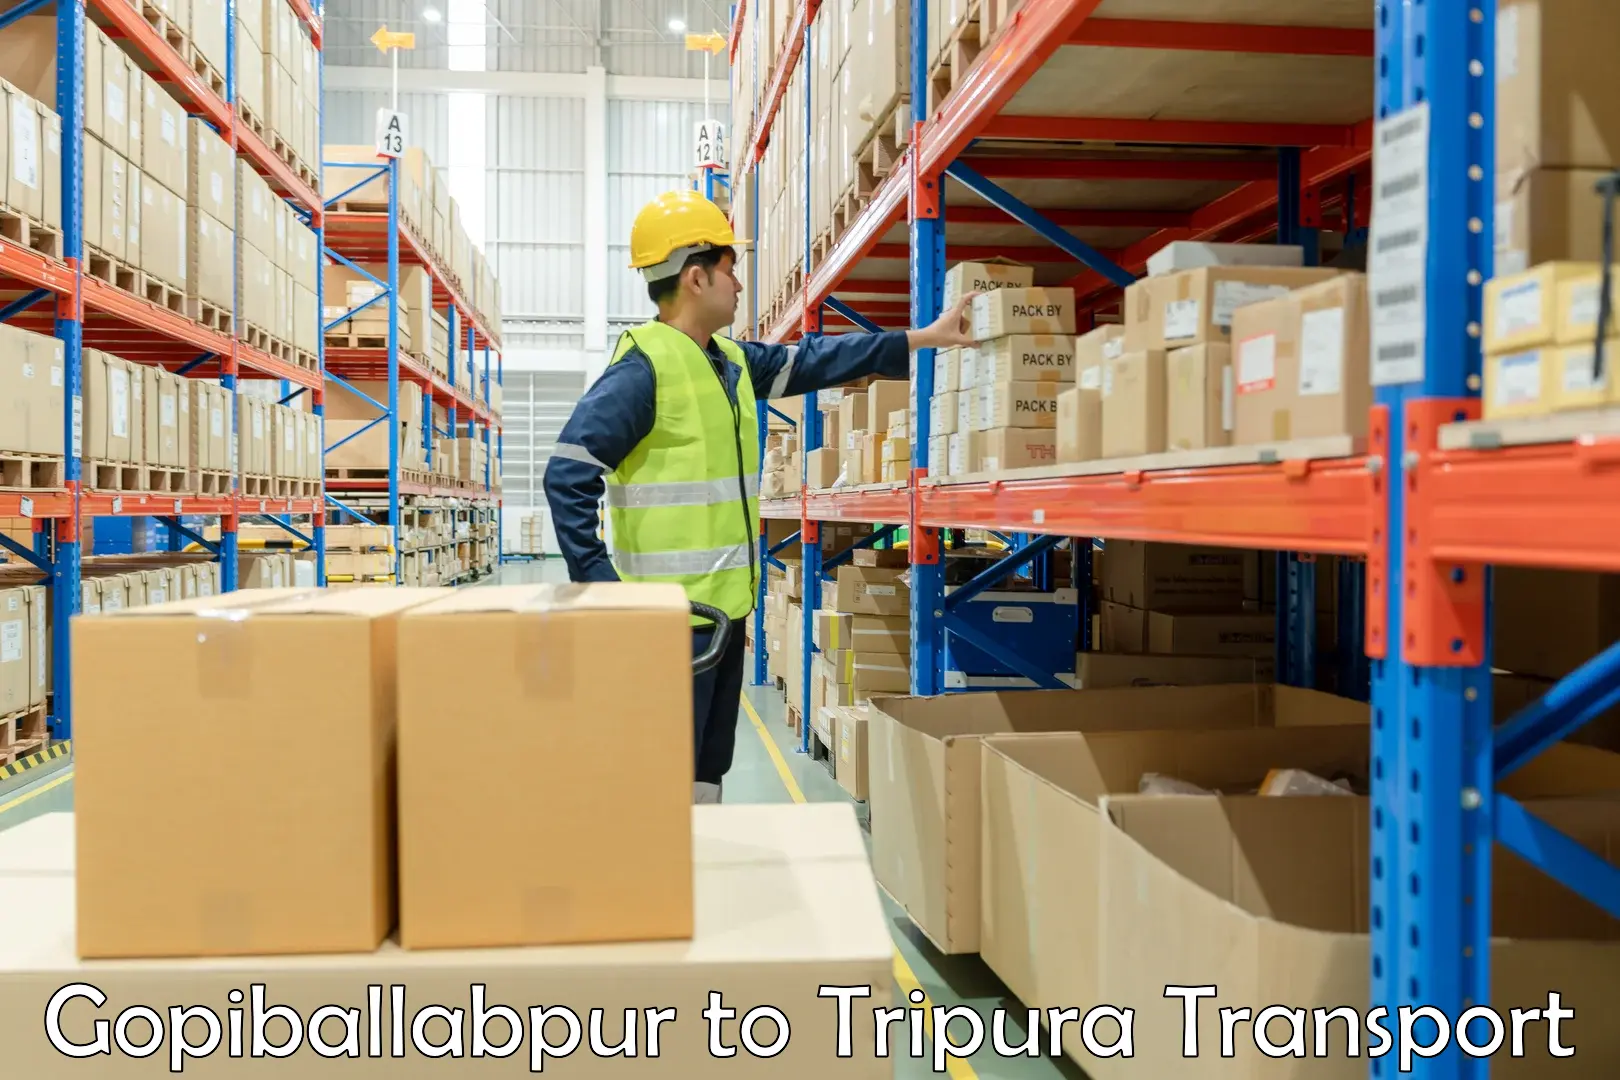 Inland transportation services Gopiballabpur to IIIT Agartala